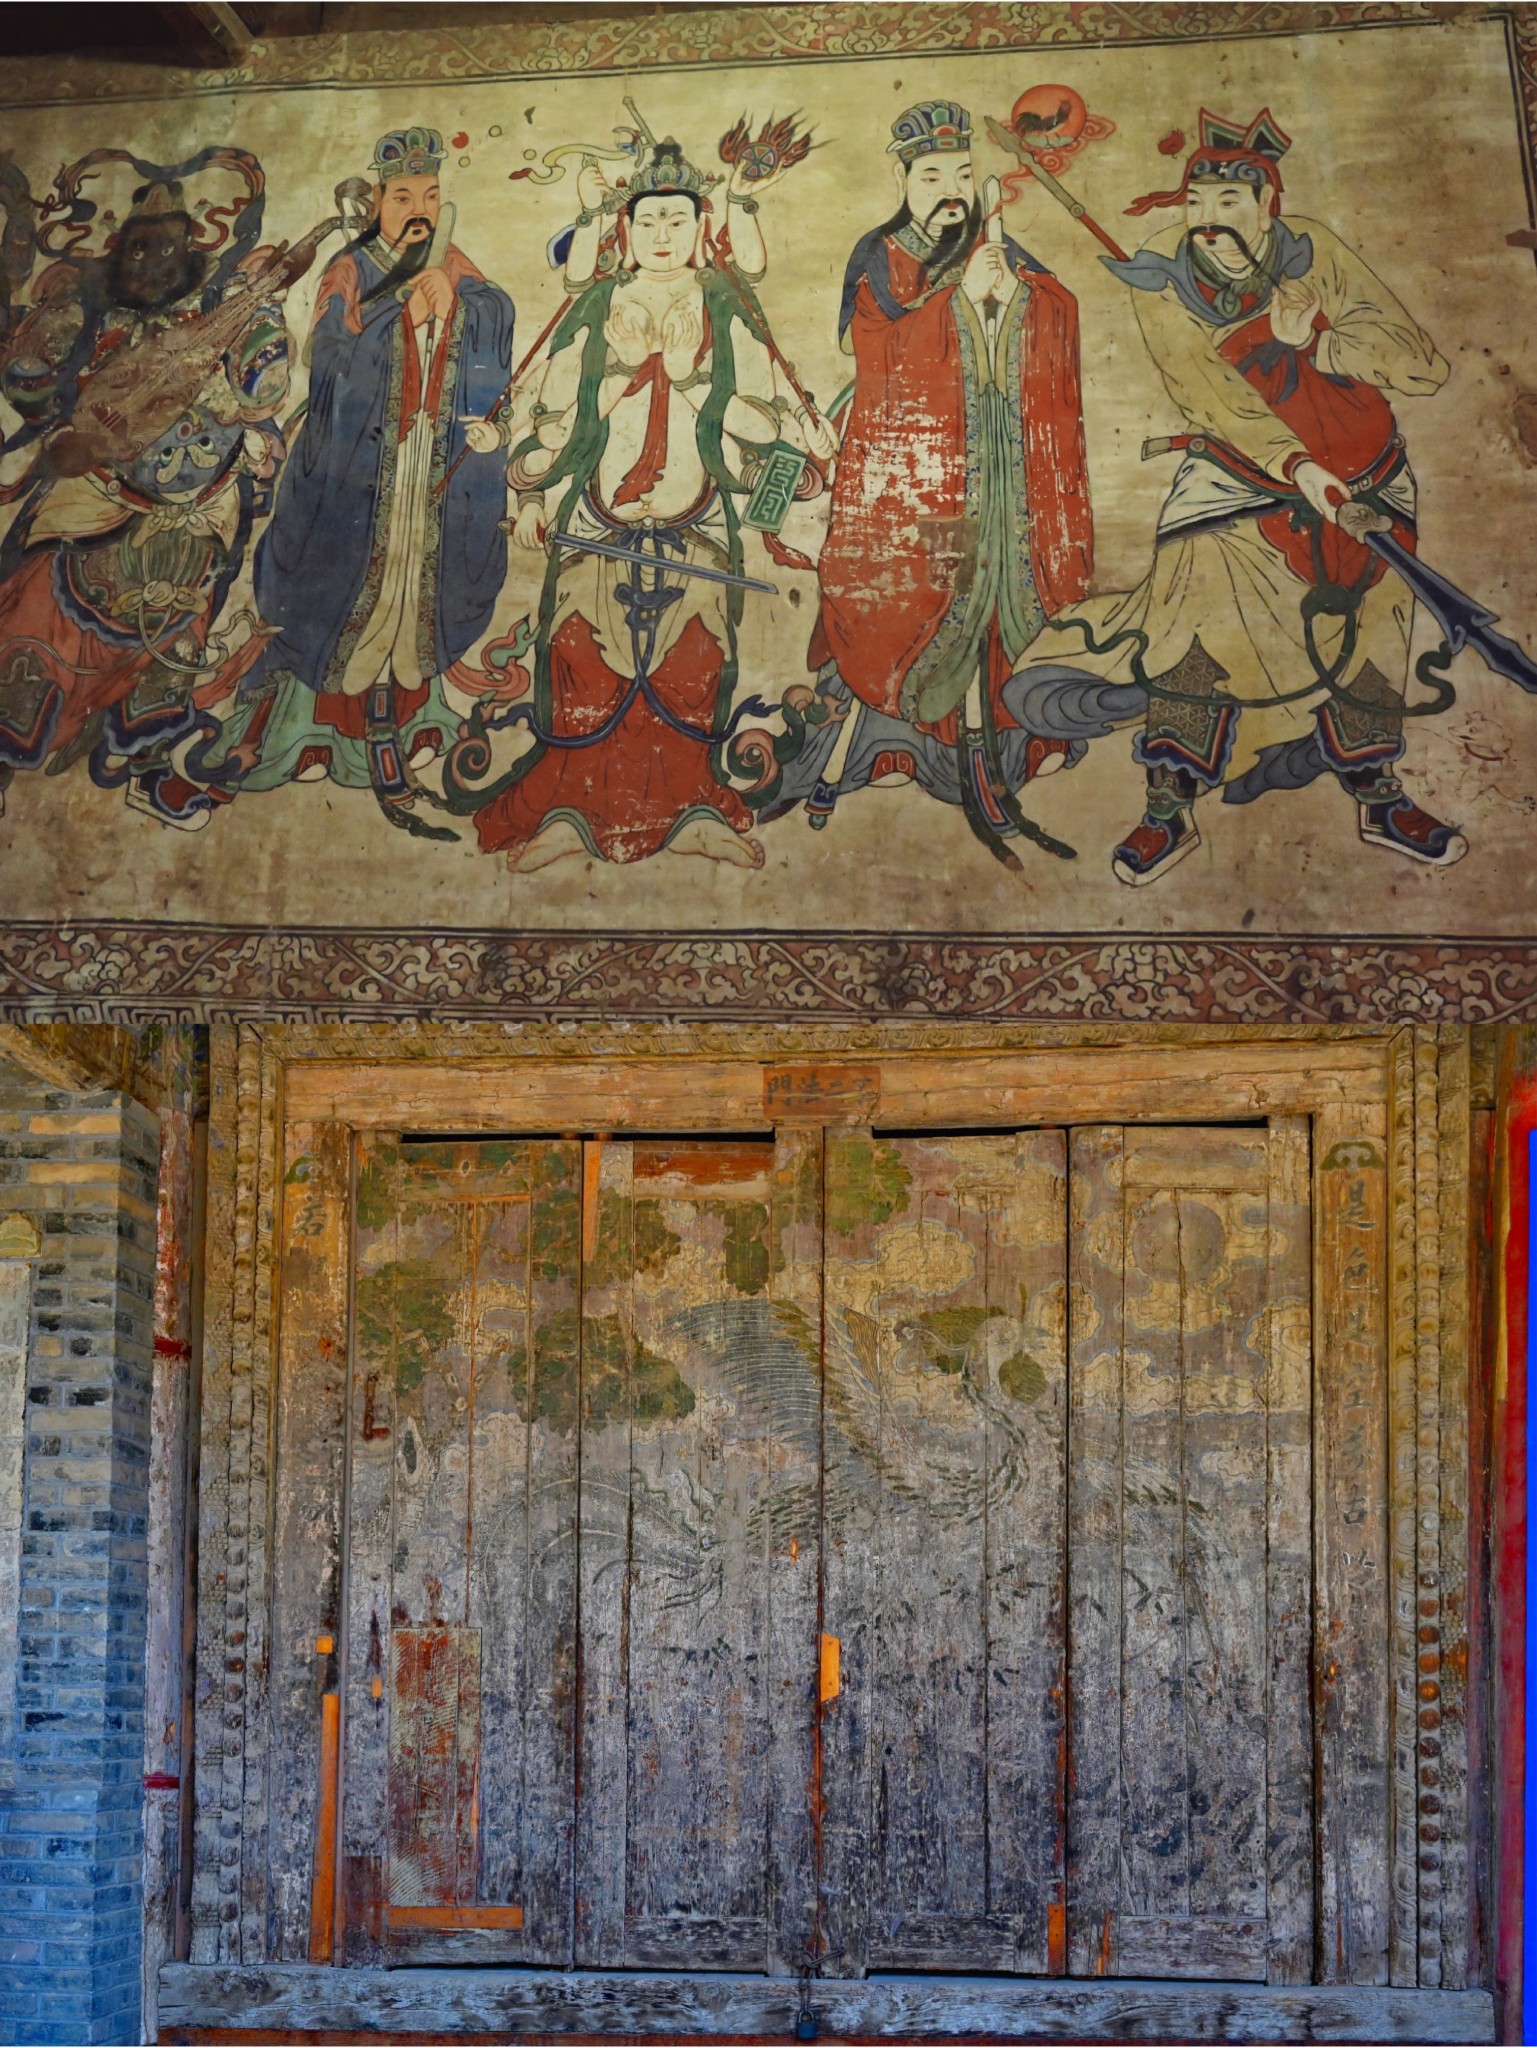 张掖最著名的景点之一——张掖大佛寺（深受皇室和名人墨客的重视）